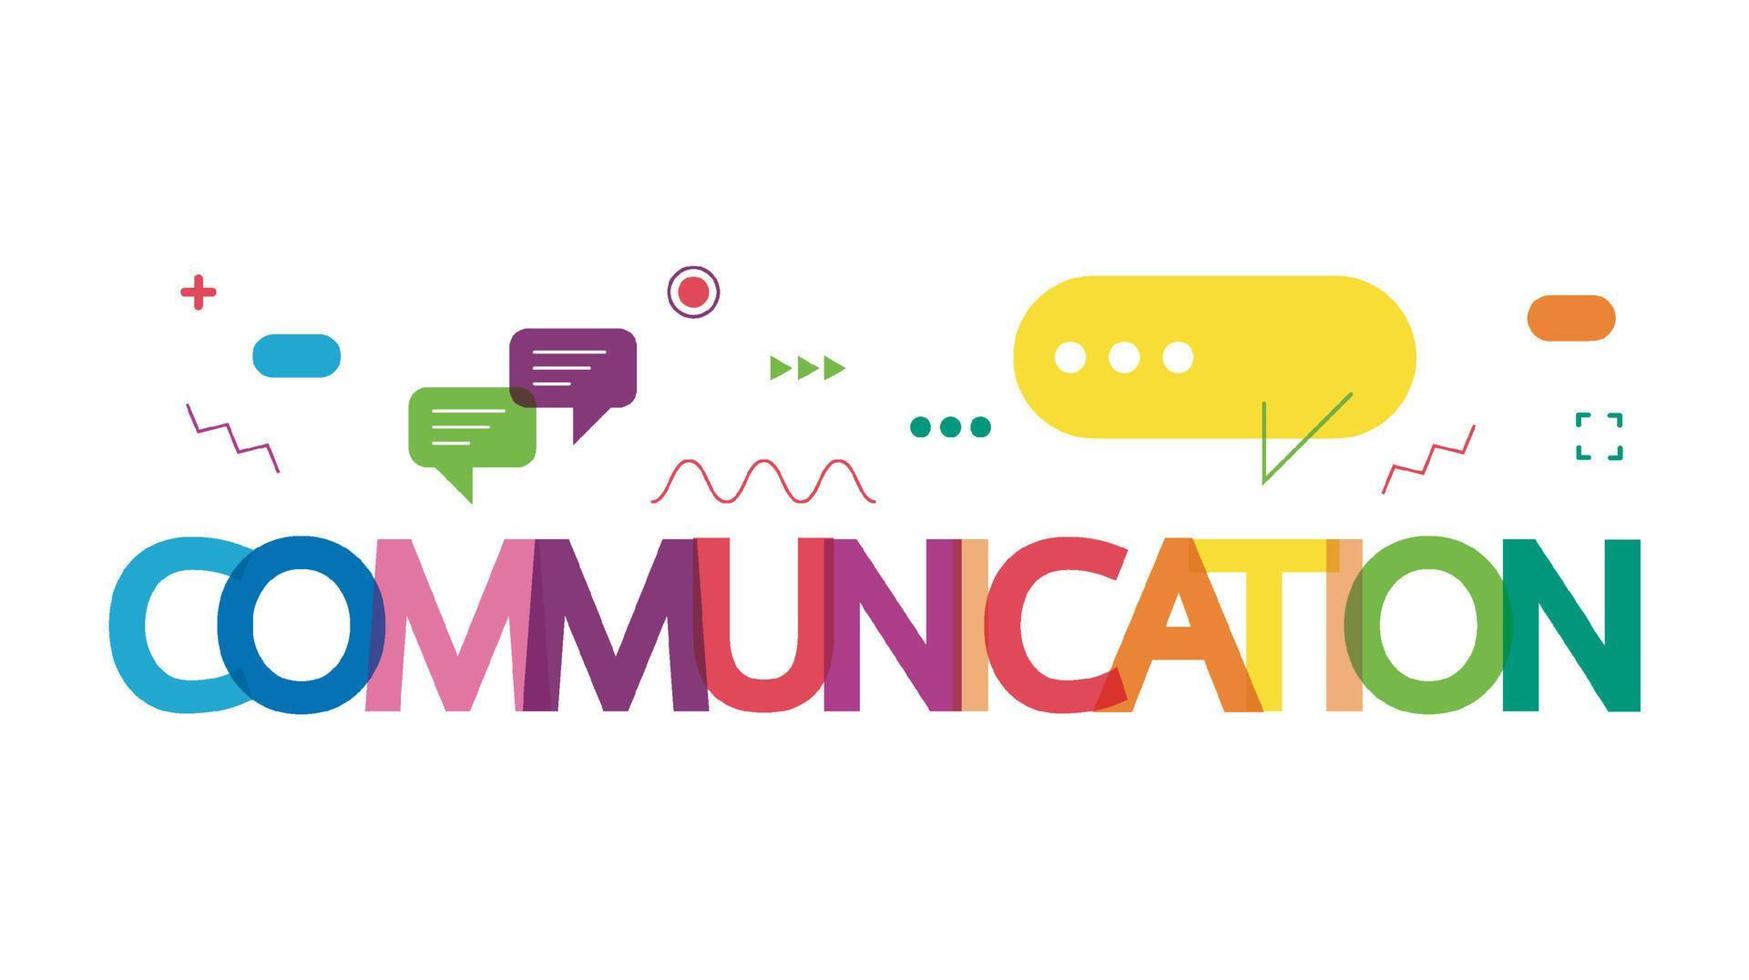 illustration vectorielle d'un concept de communication. le mot communication avec des bulles de dialogue colorées vecteur